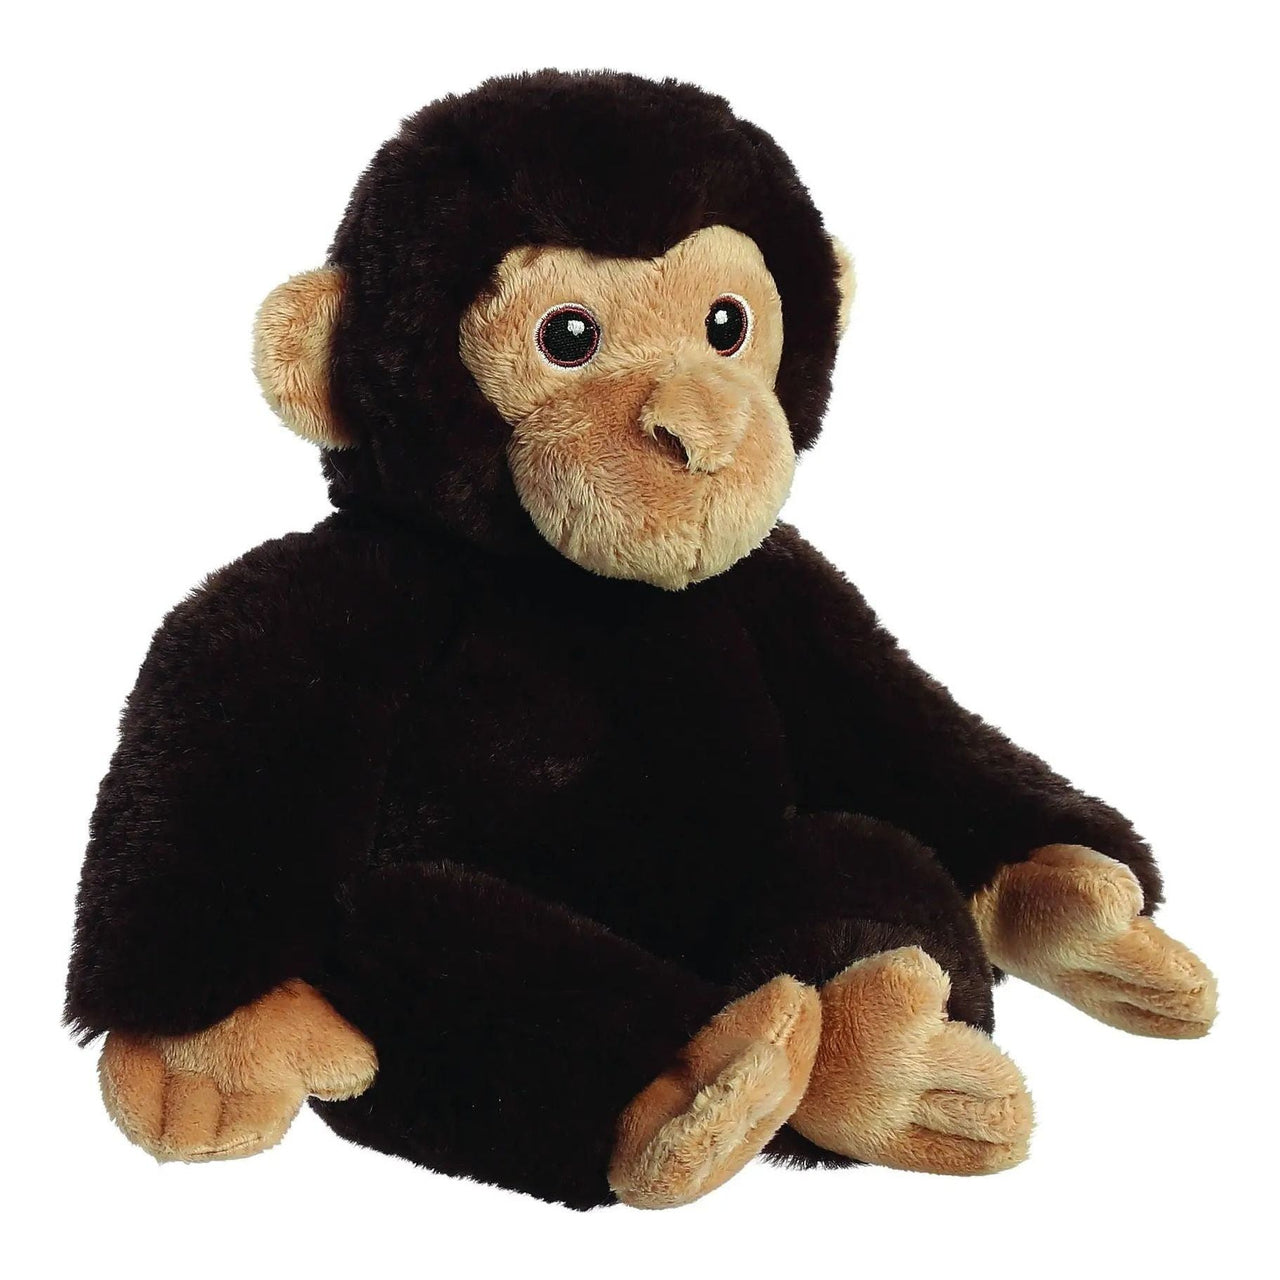 Eco Nation Chimpanzee 9.5" Plush Toy Aurora